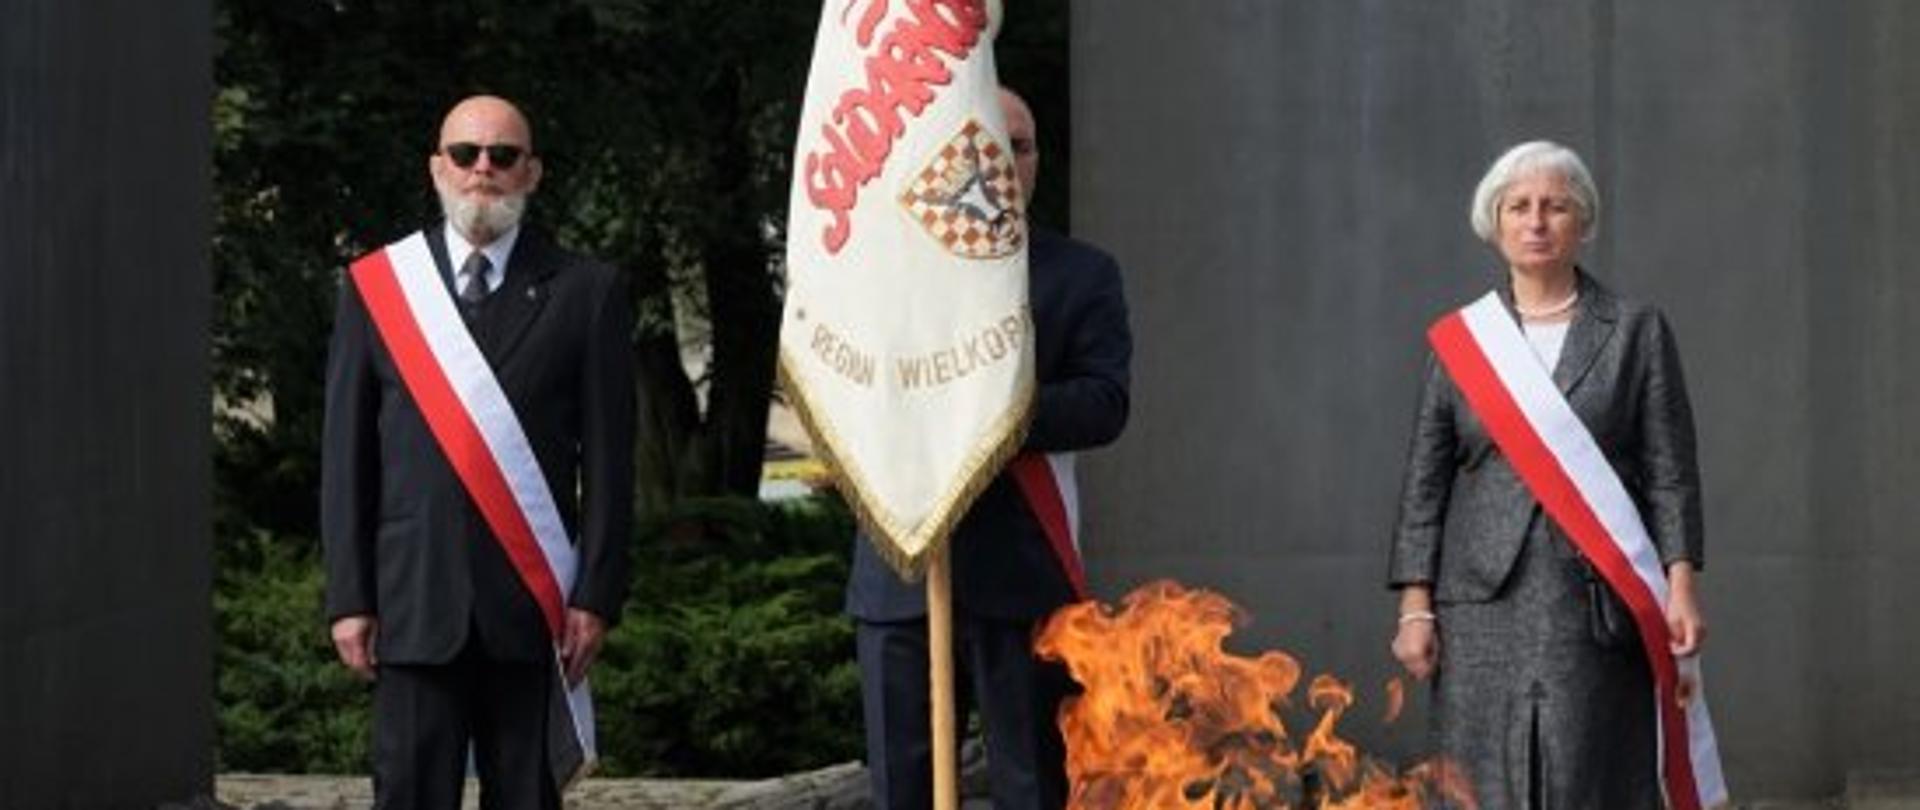 zdjęcie przestawia palący się znicz, za którym stoi poczet sztandarowy złożony z trzech osób. Po lewej stoi mężczyzna ubrany w szary garnitur, białą koszulę i krawat, przez ramię ma przewieszoną szarfę biało-czerwoną, w środku stoi mężczyzna trzymający sztandar. Obok stoi kobieta w szarej garsonce z przewieszoną przez ramię biało-czerwoną szarfą. 